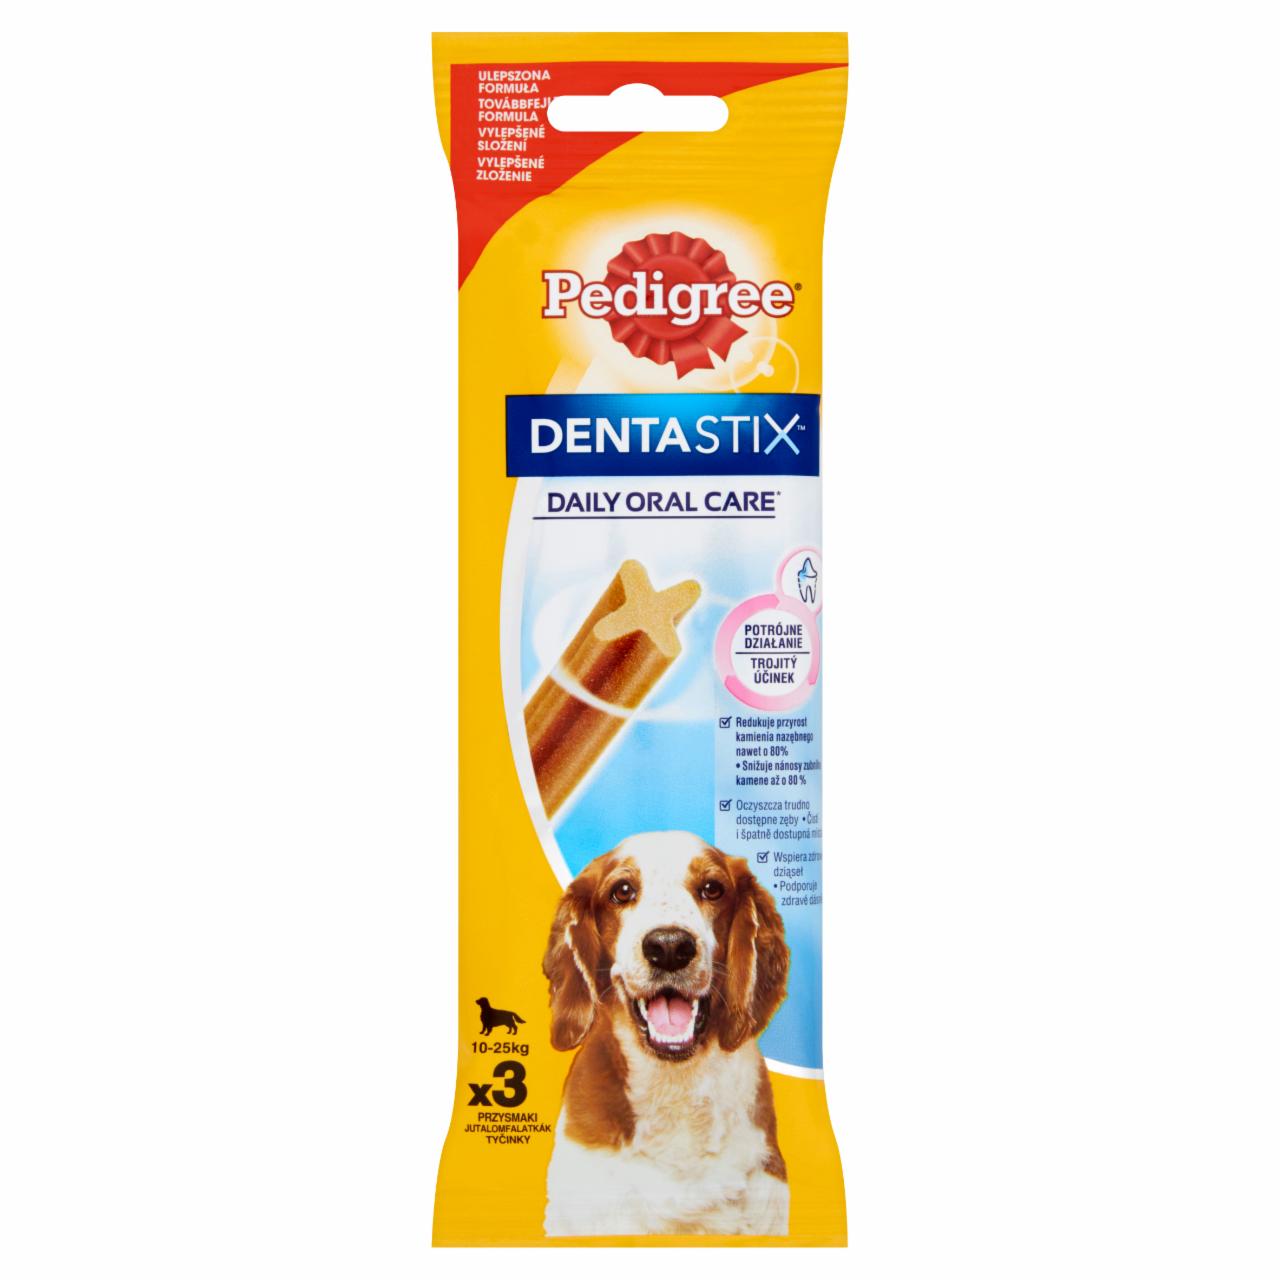 Képek - Pedigree DentaStix jutalomfalat 10-25 kg-os kutyáknak 3 db 77 g